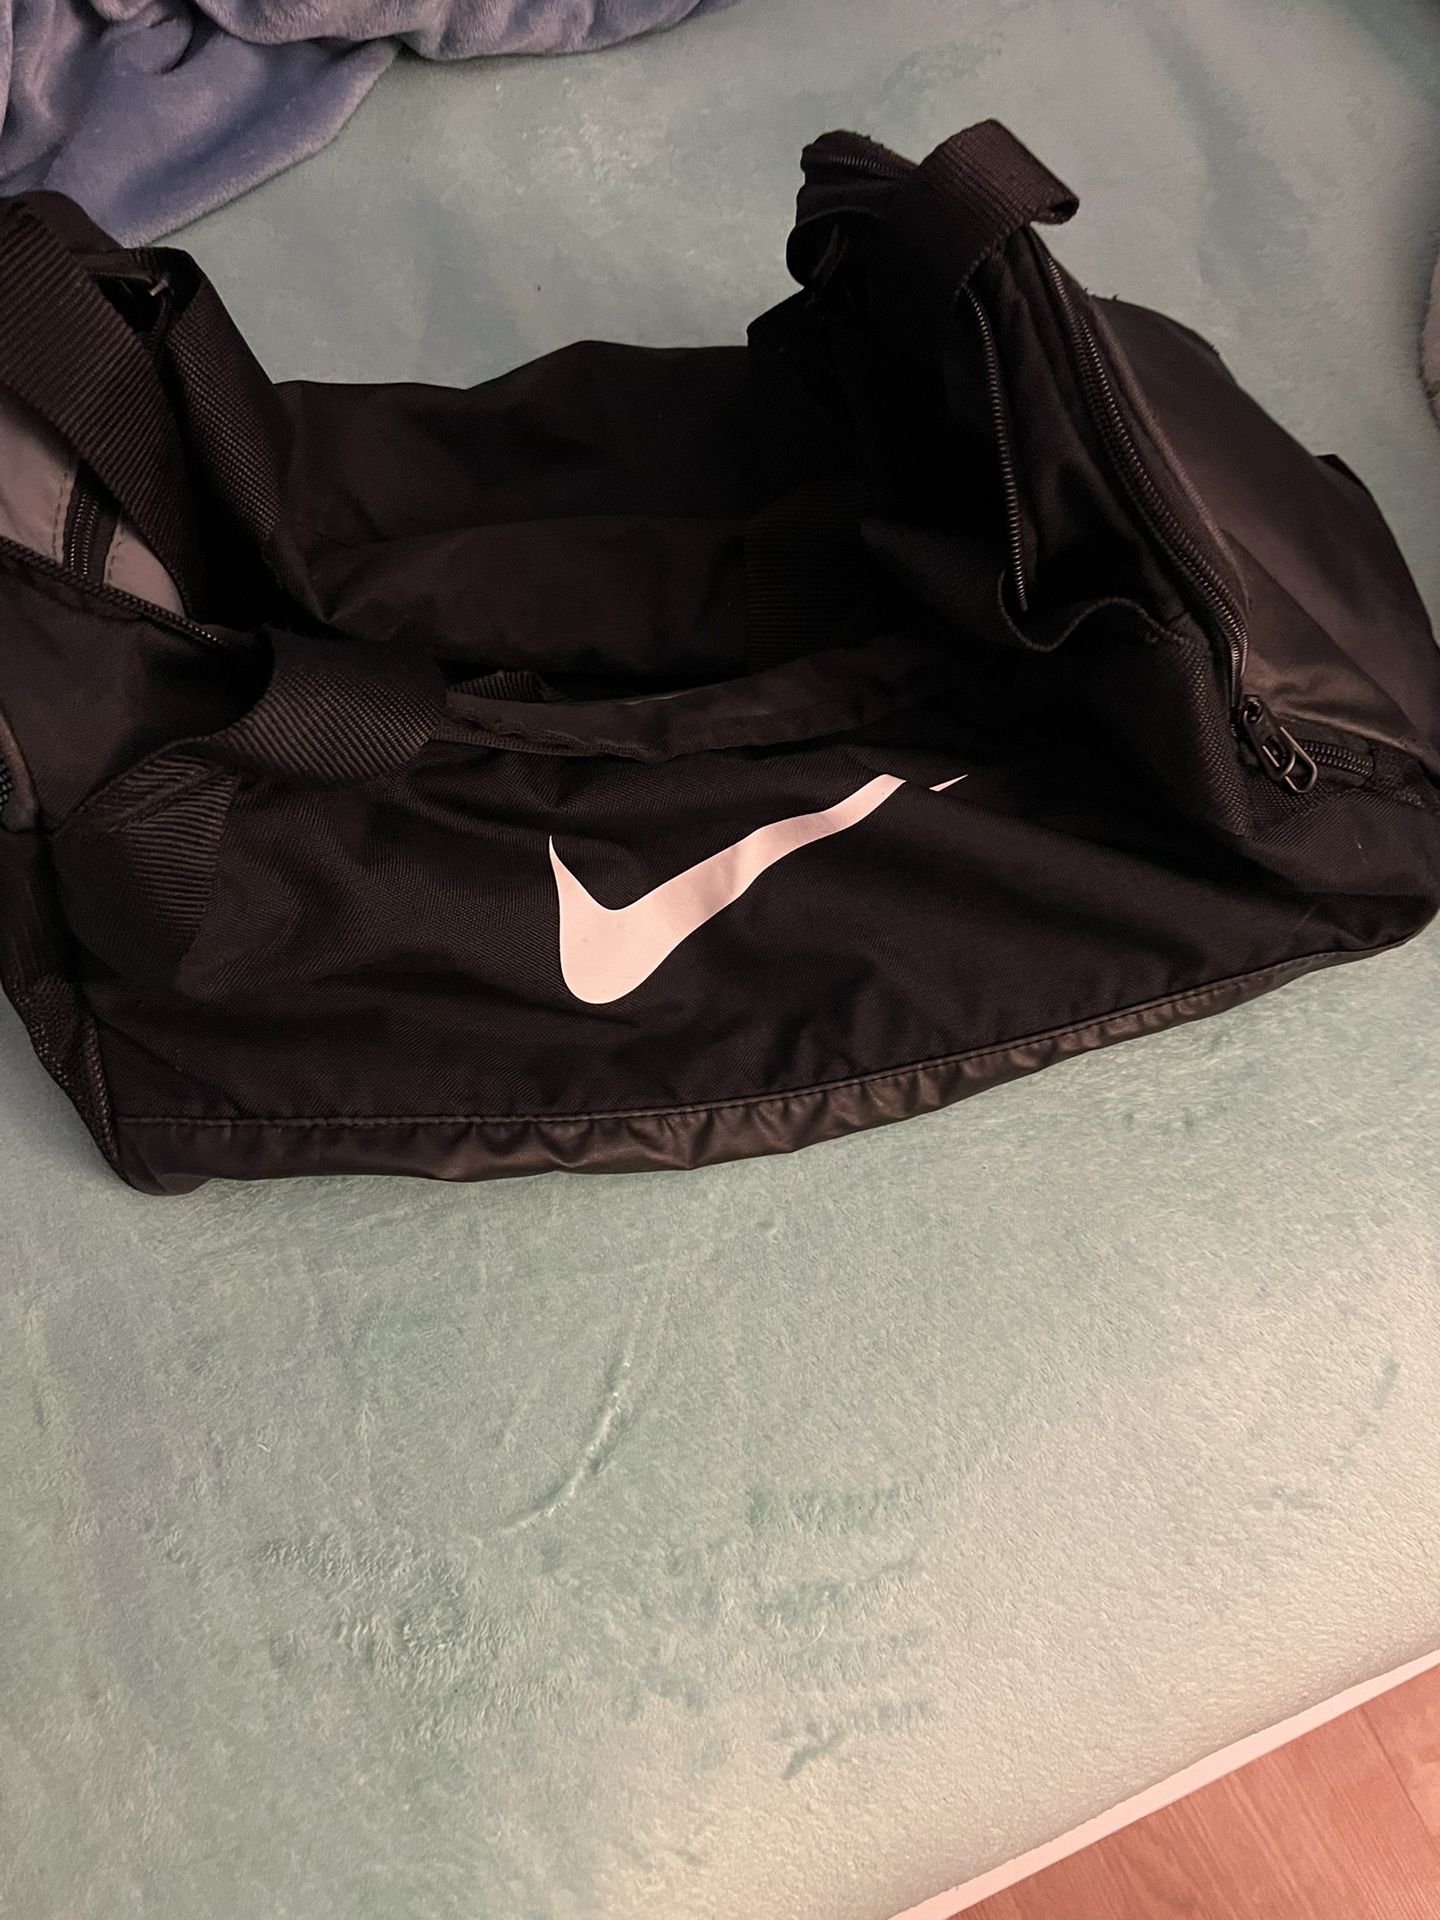 Nike Gym Bag